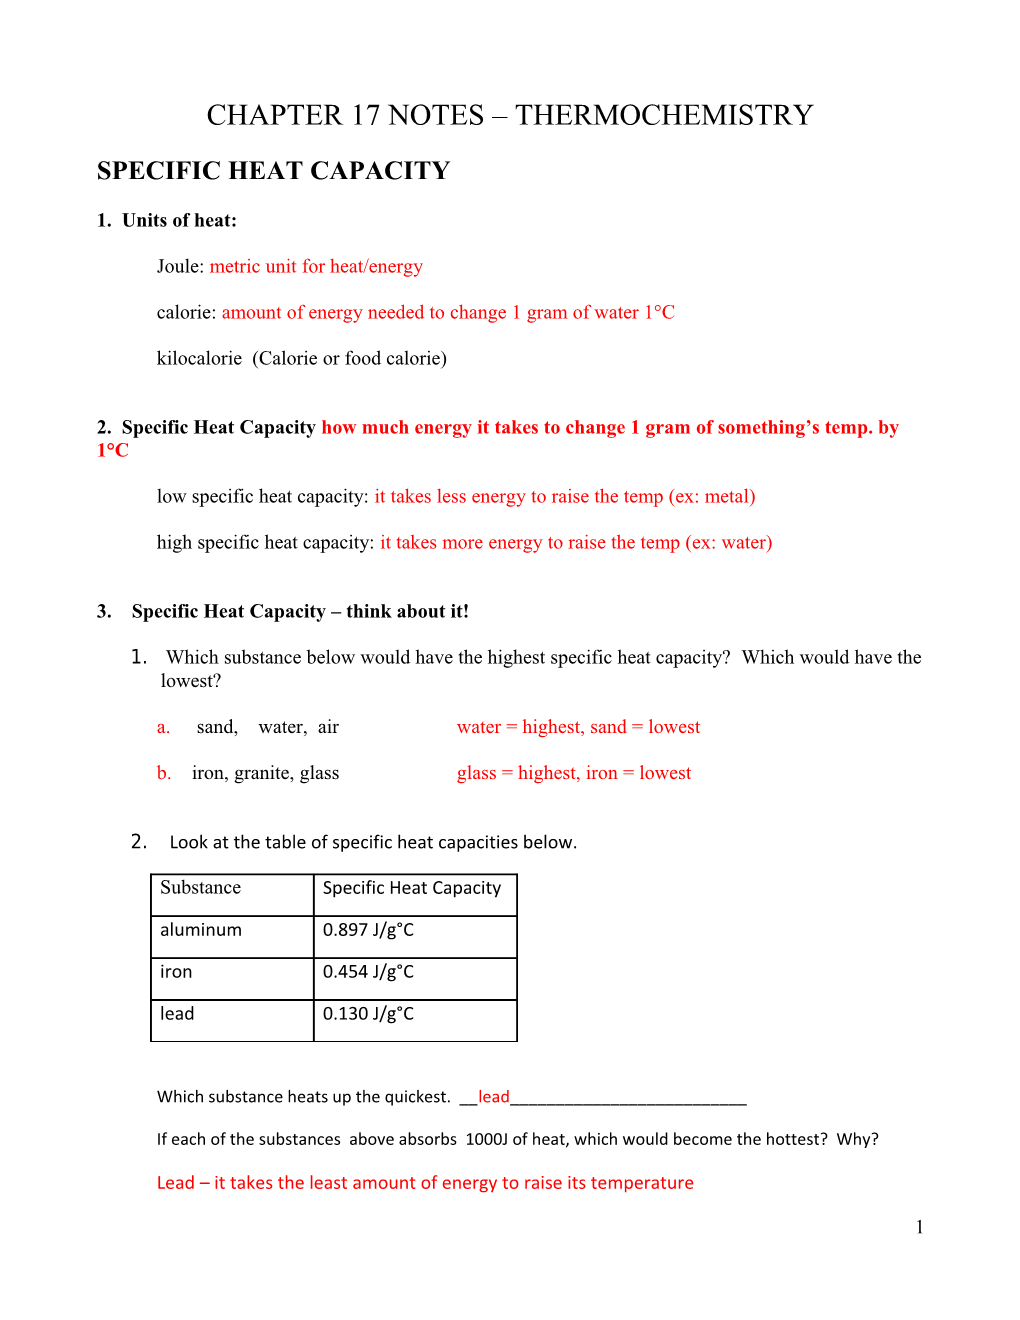 Specific Heat Capacity and Calorimetry